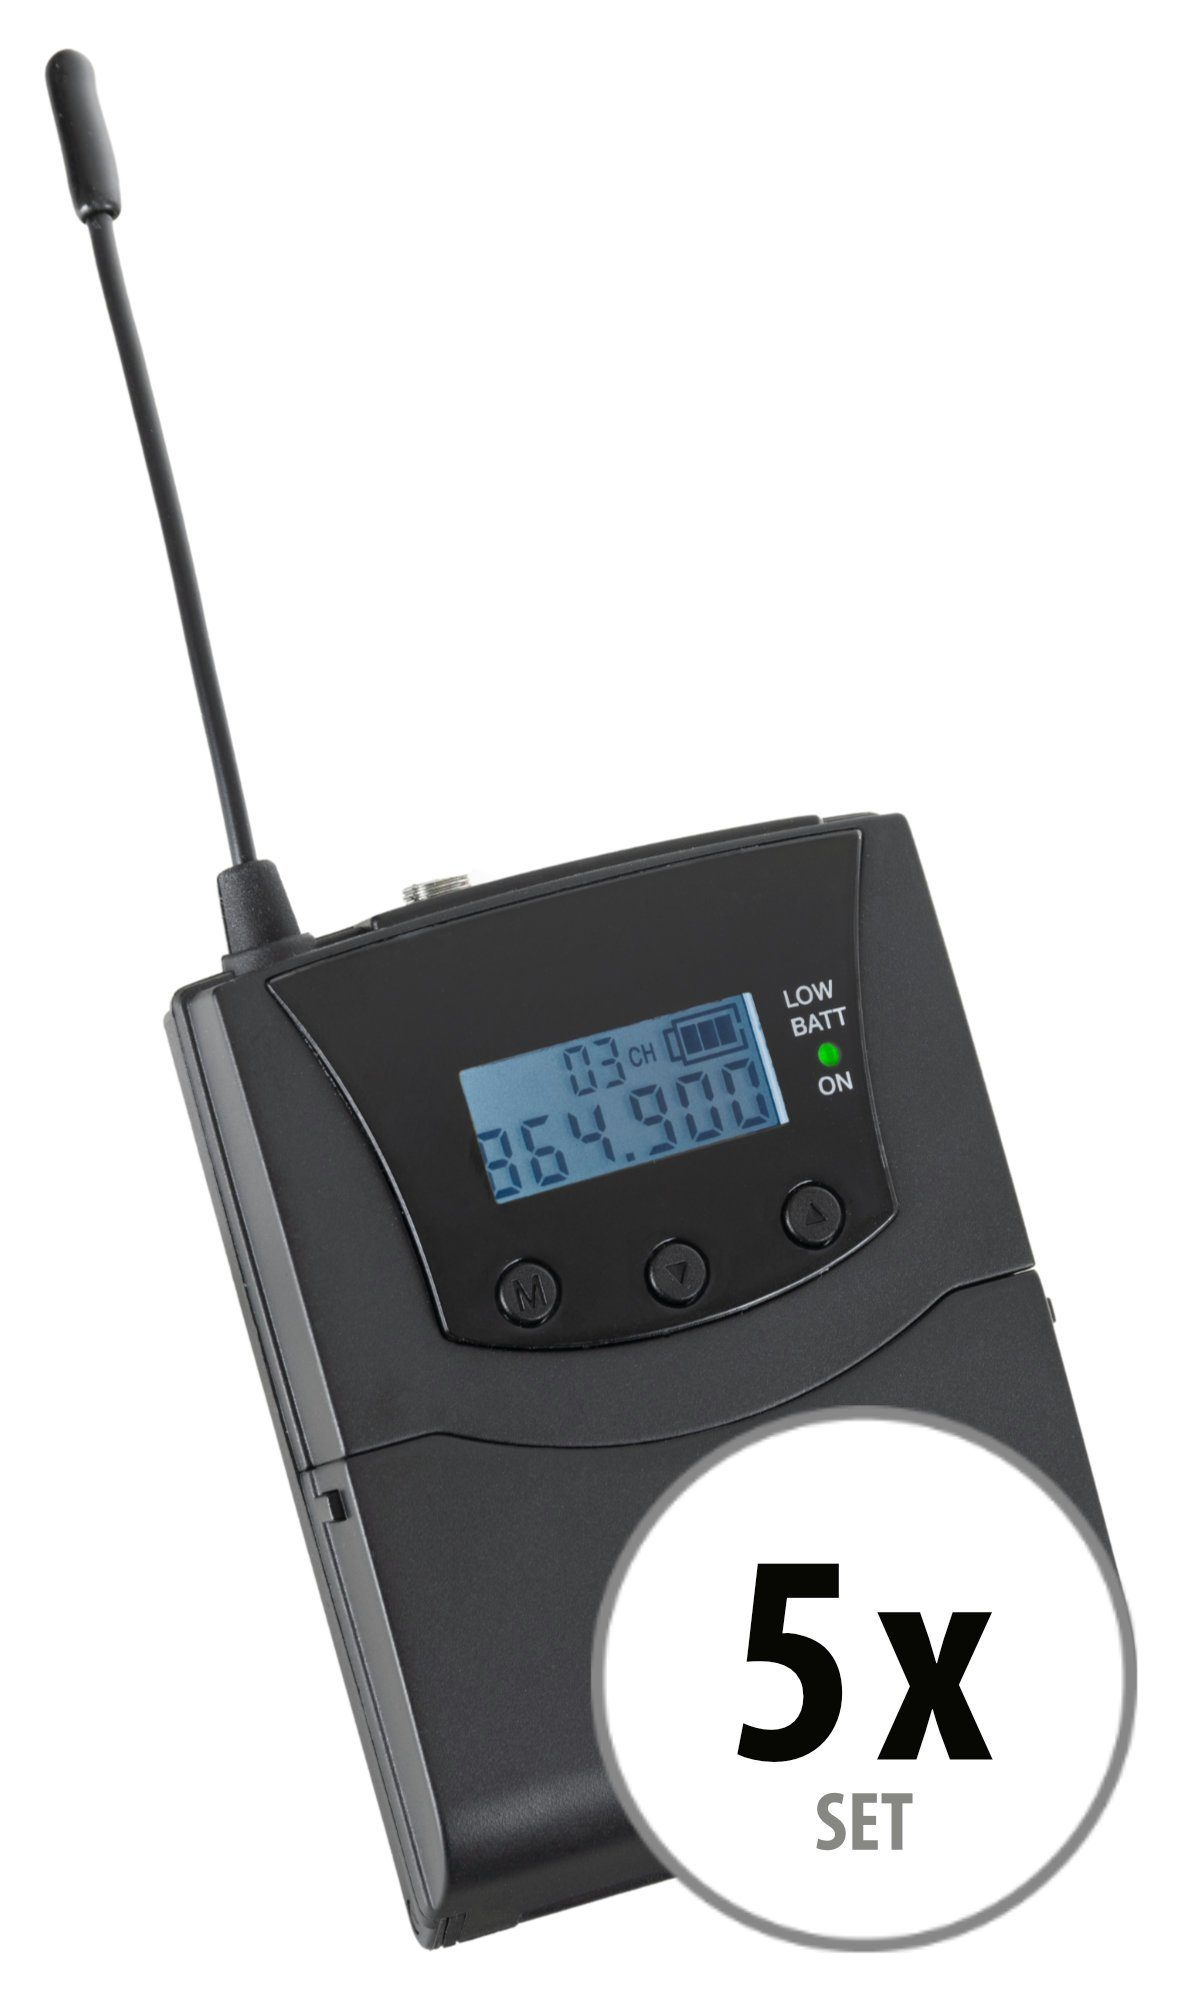 Guide V2 mit 3 UHF-Technik, Kanäle, Beatfoxx Verwendung handelsüblichen Funk-Empfänger zur Silent Bodypack-Receiver (Stereo Funk-Kopfhörer SDR-BP30 jedem empfangbare mit Kopfhörer)